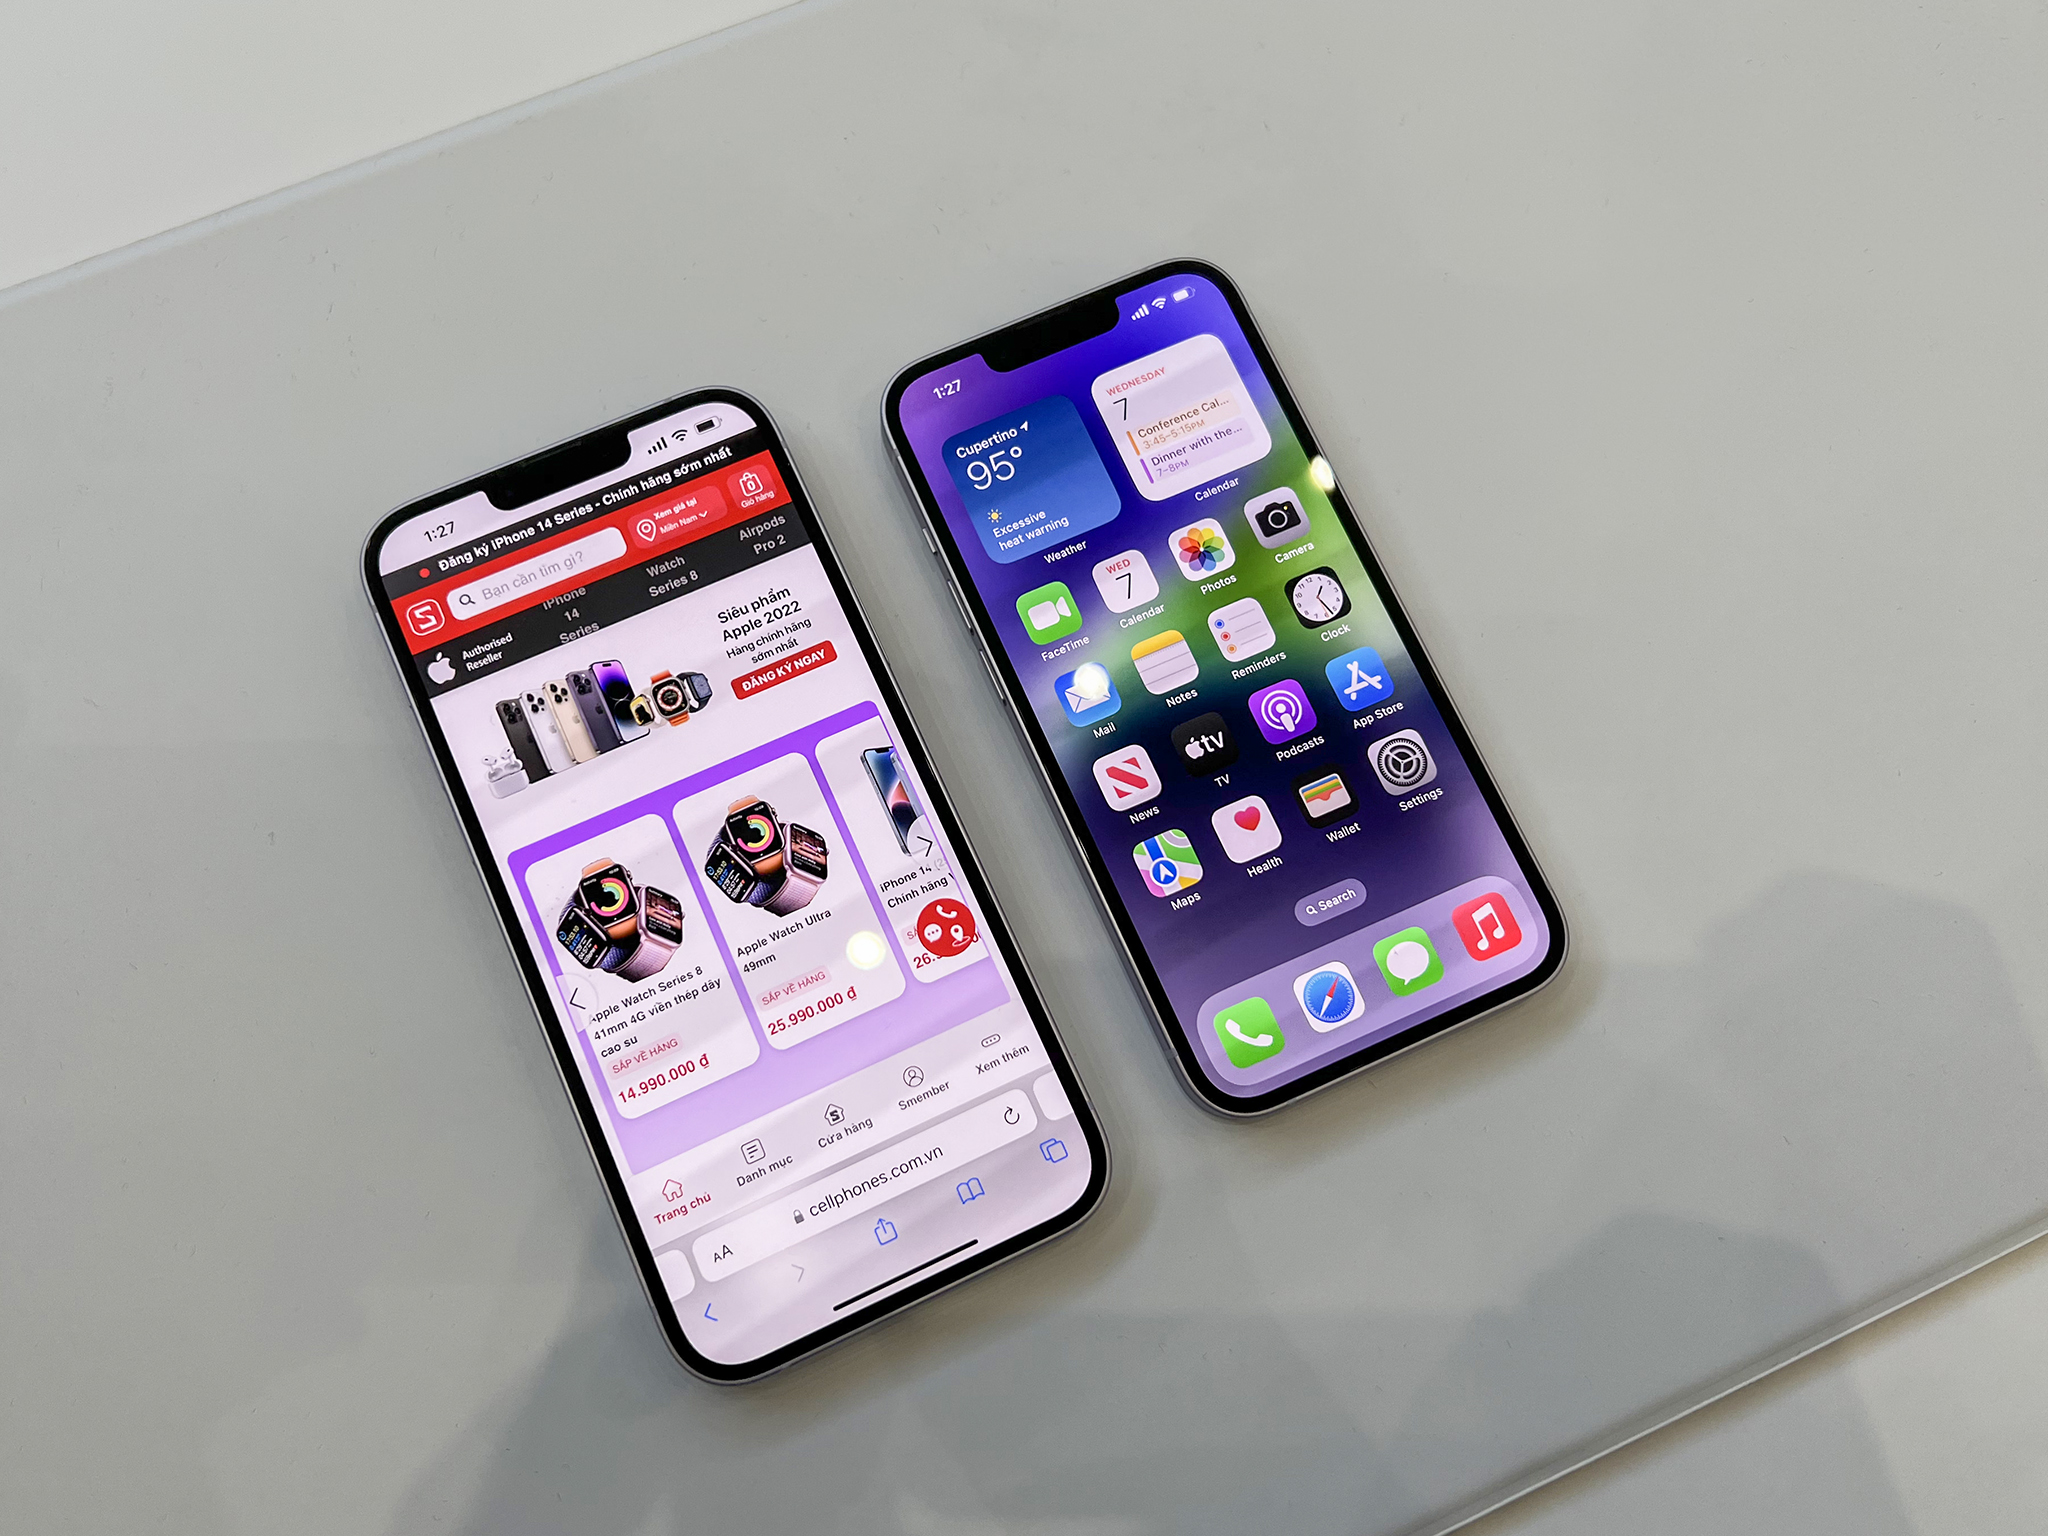 CellphoneS công bố thời gian đặt trước và mở bán iPhone 14 series chính hãng tại Việt Nam